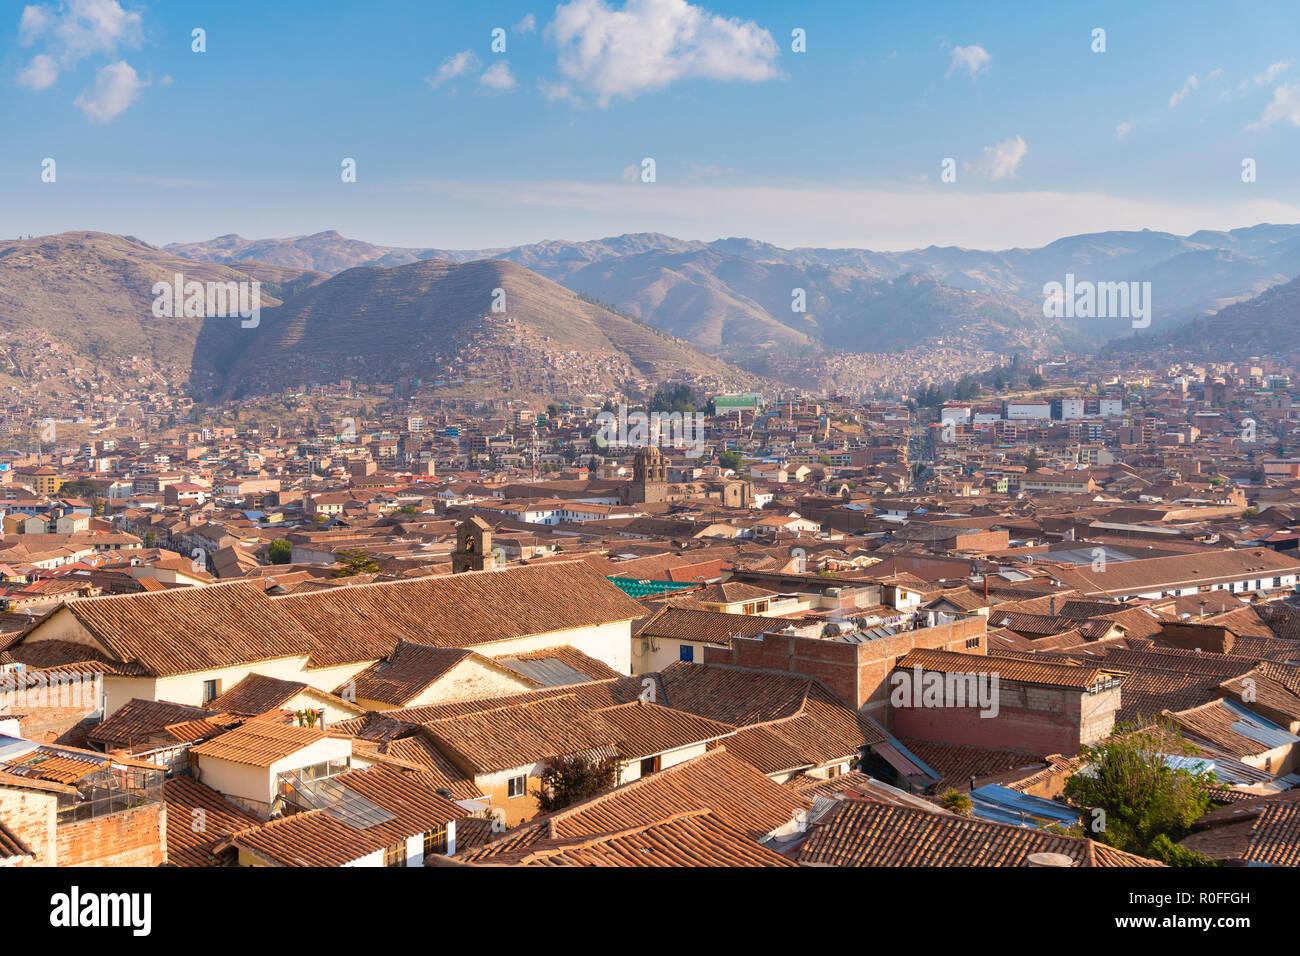 View of Cusco city in Peru Stock Photo